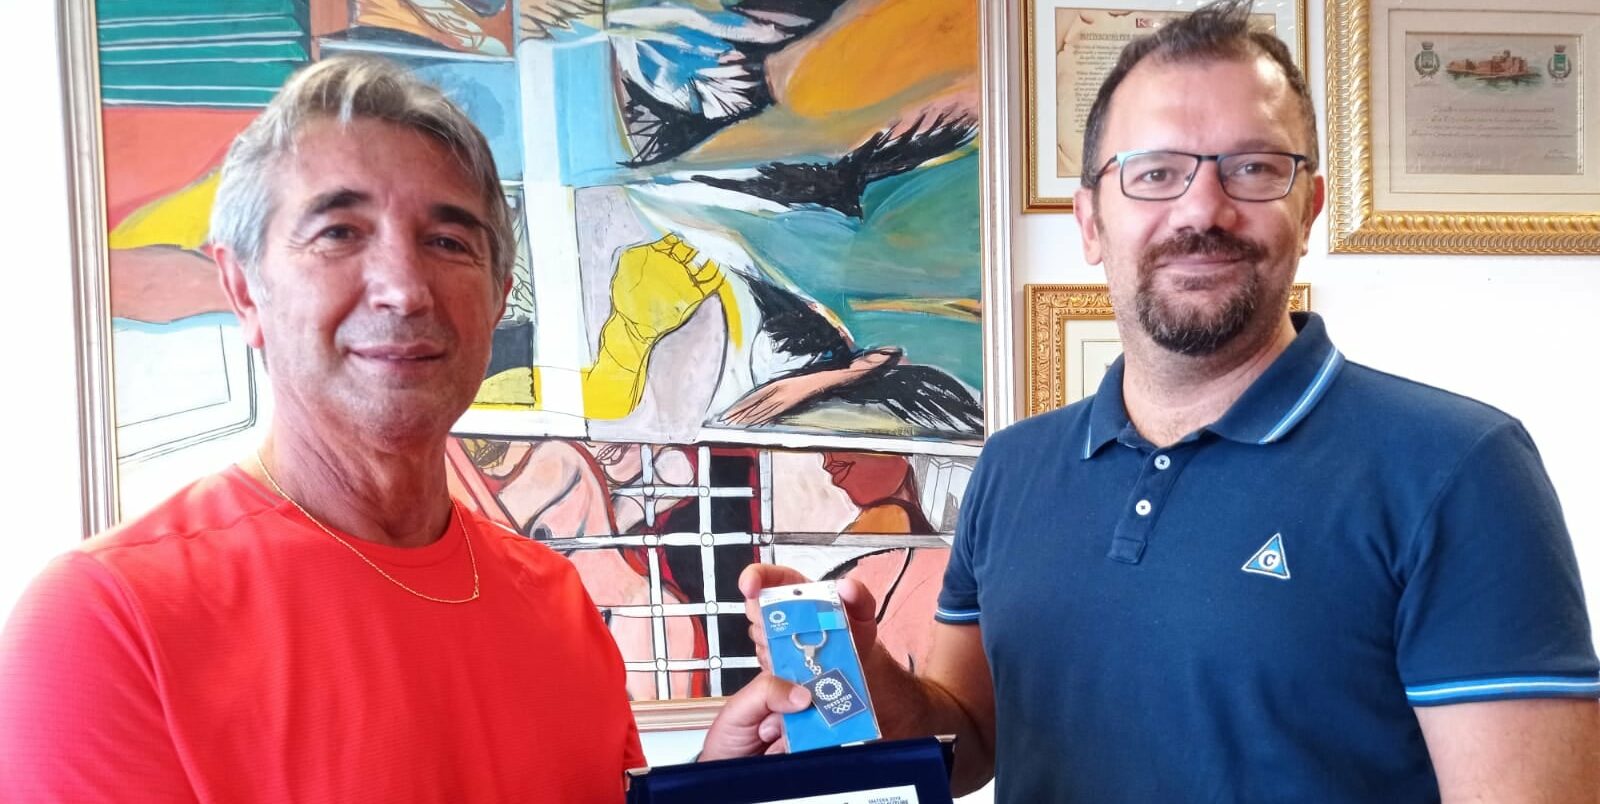 Matera, il sindaco Bennardi: “Il maestro Zaccaro motivo di orgoglio per la nostra città”